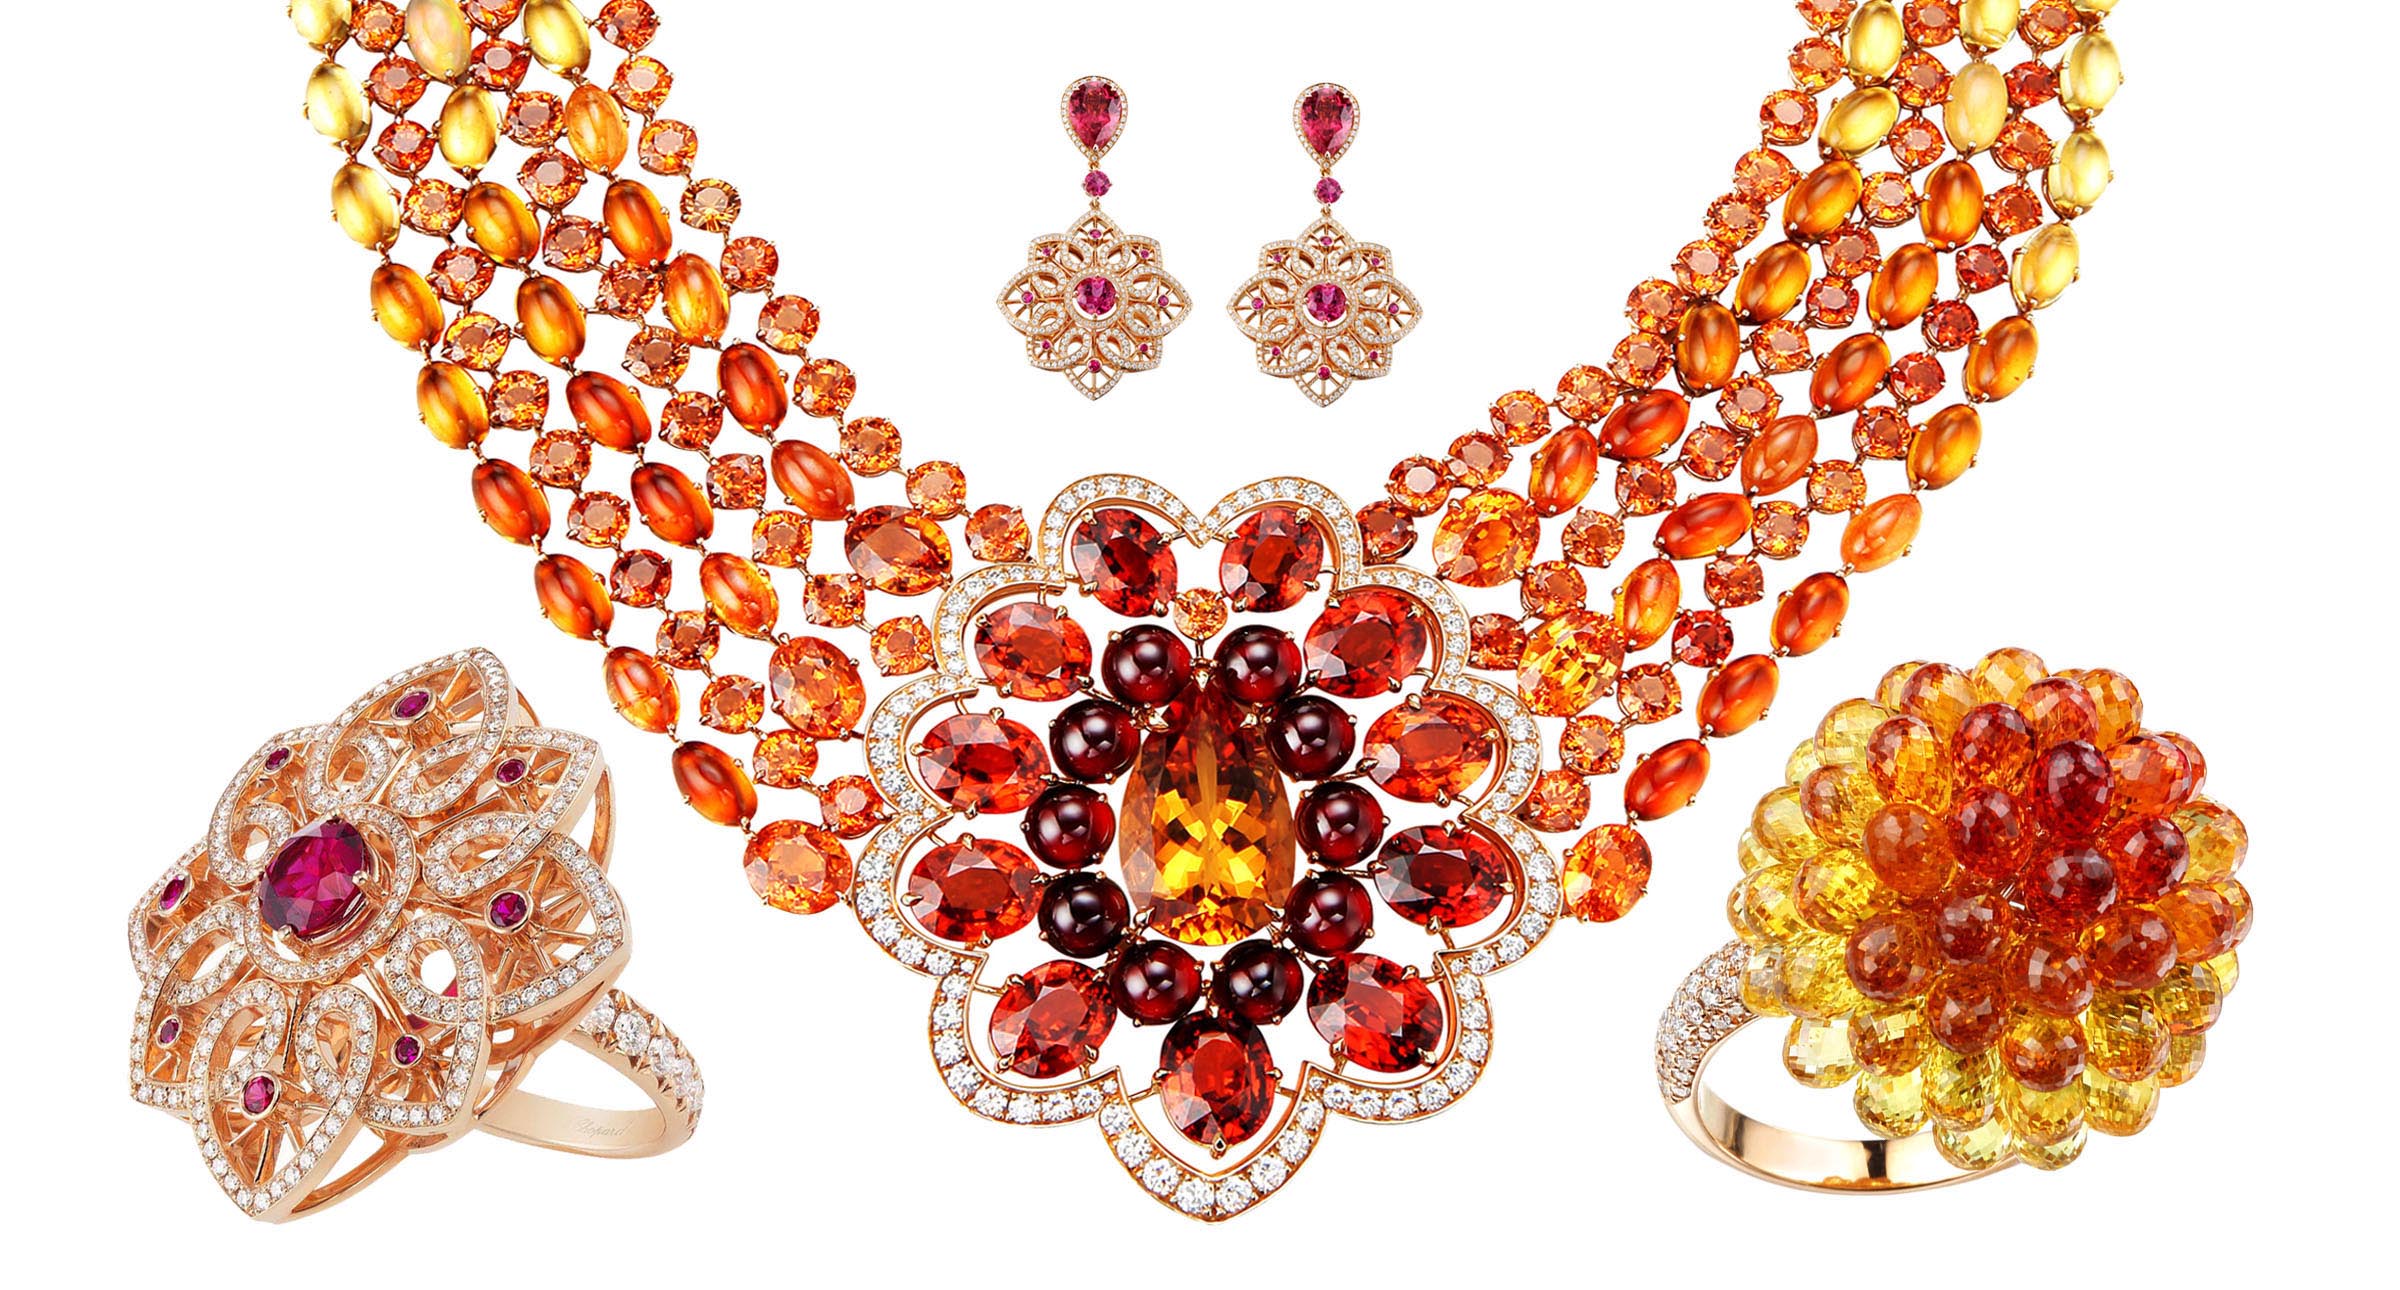 【#Jewelry】Chopard頂級珠寶及腕錶展看點：祖母綠、紅碧璽等彩寶綻放...